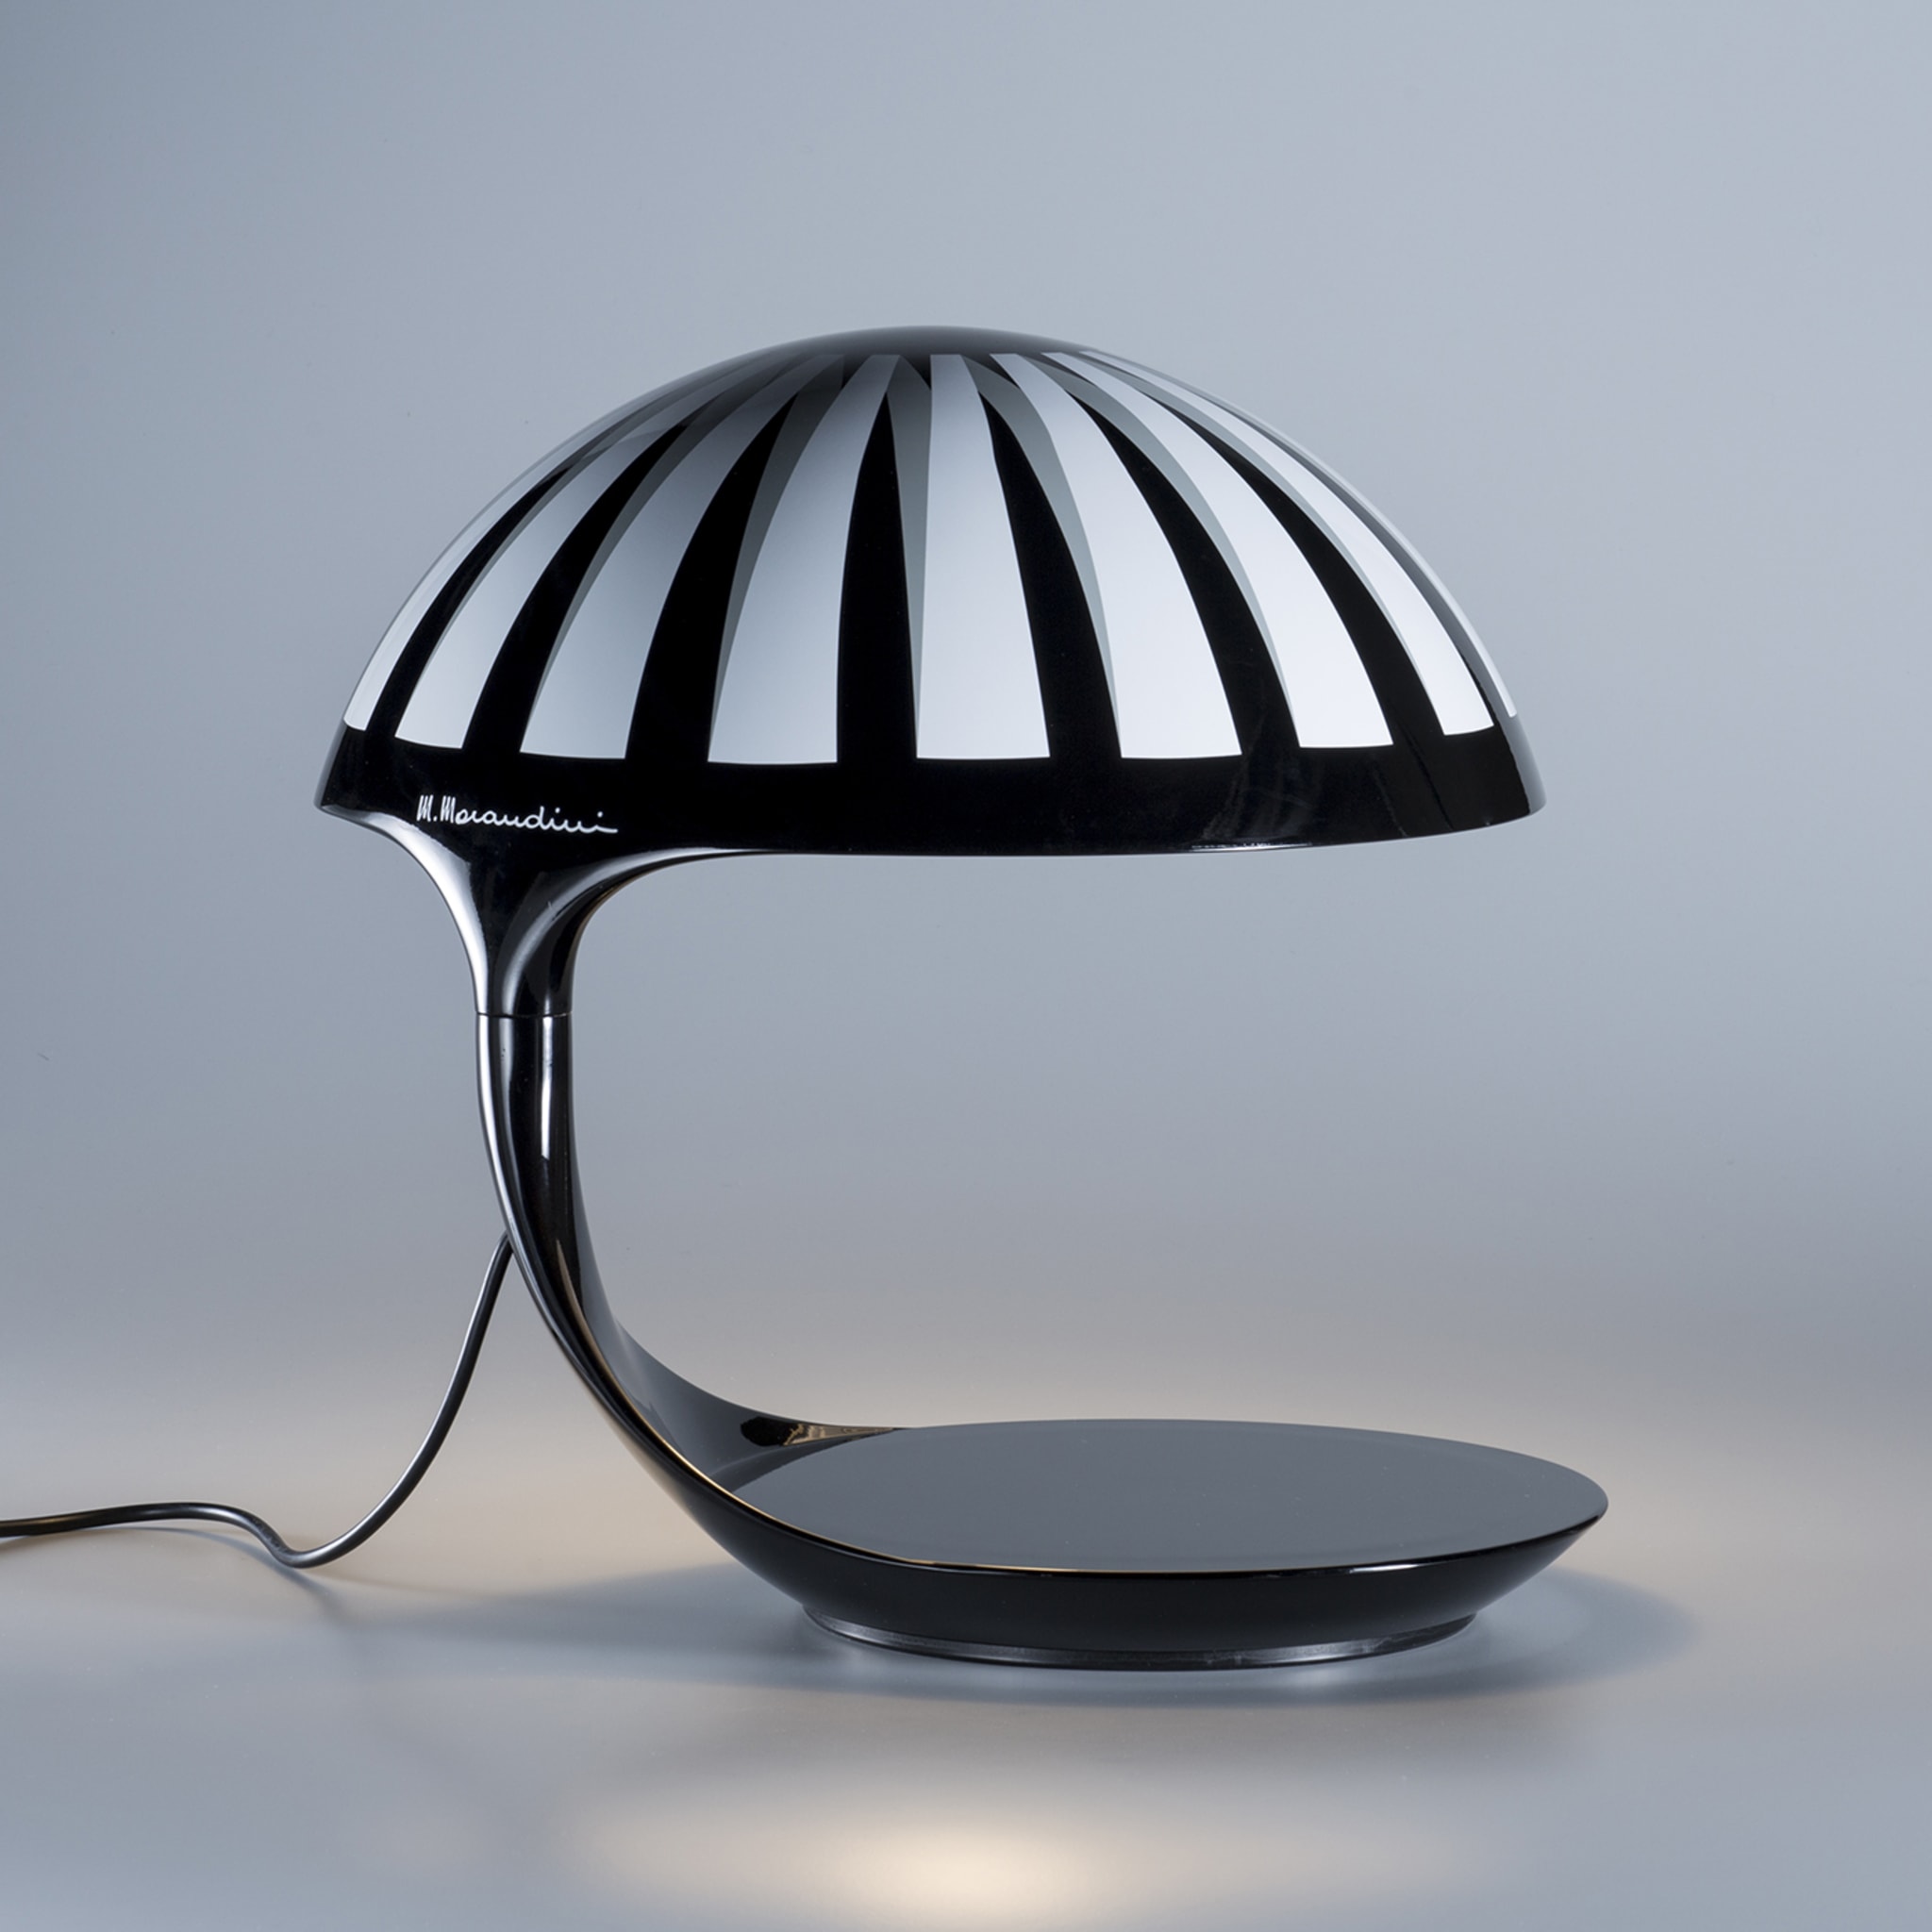 Cobra Texture Black-And-White Table Lamp by Marcello Morandini - Alternative view 2